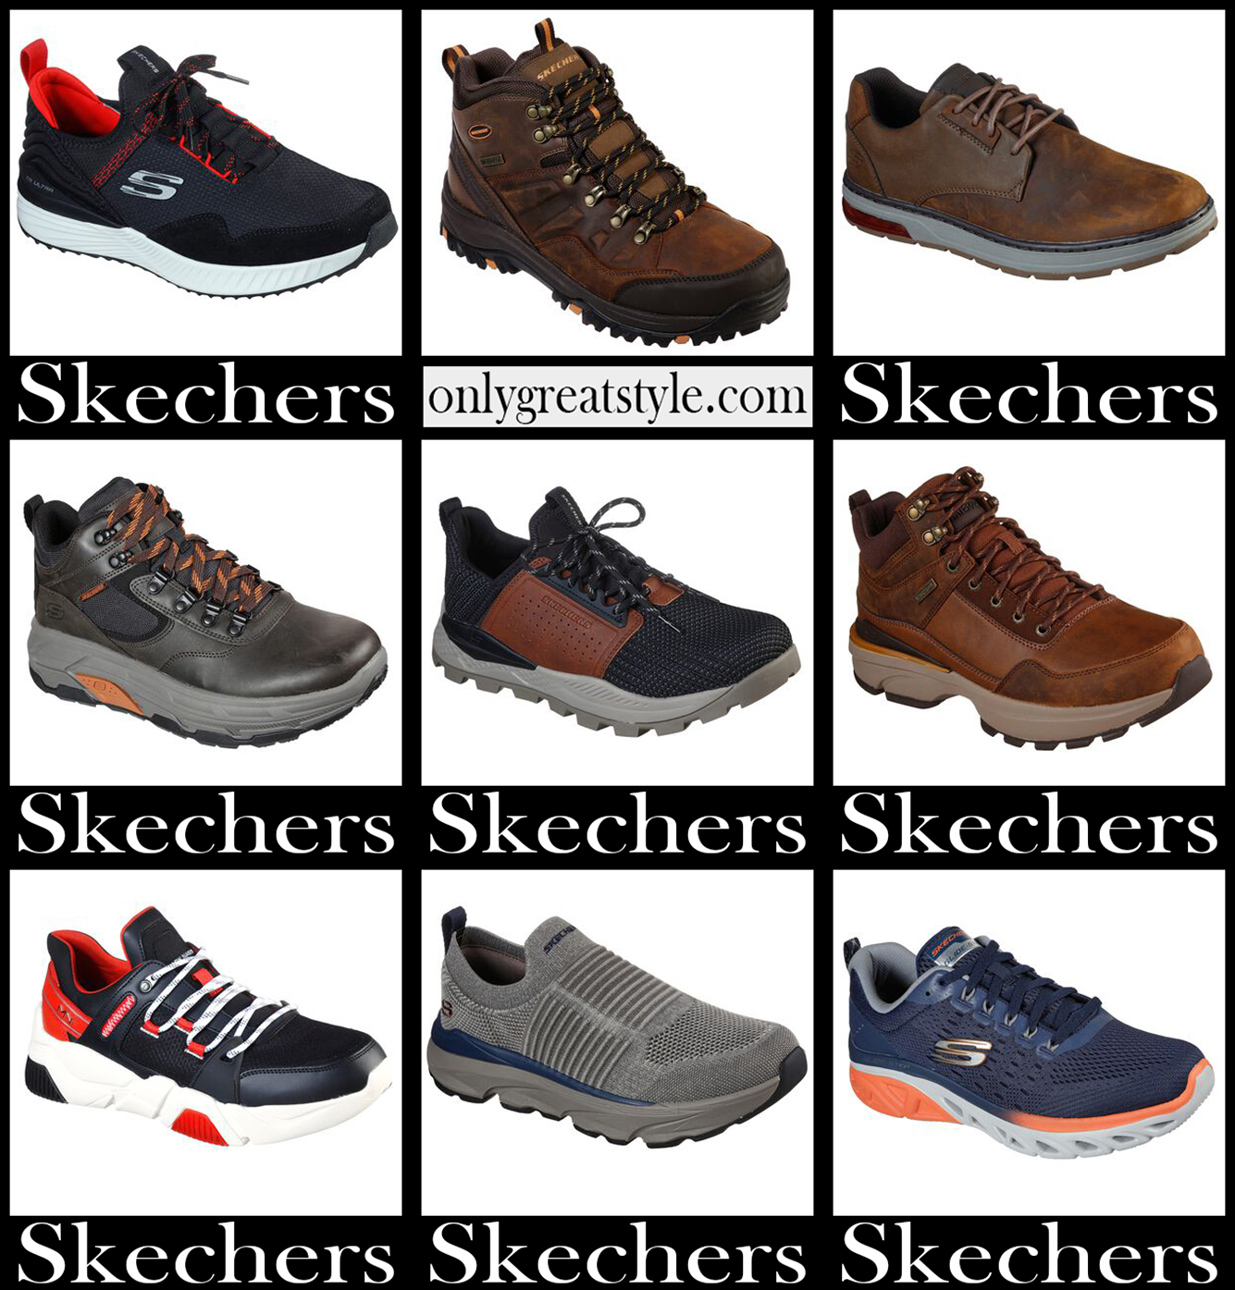 skechers skechers shoes